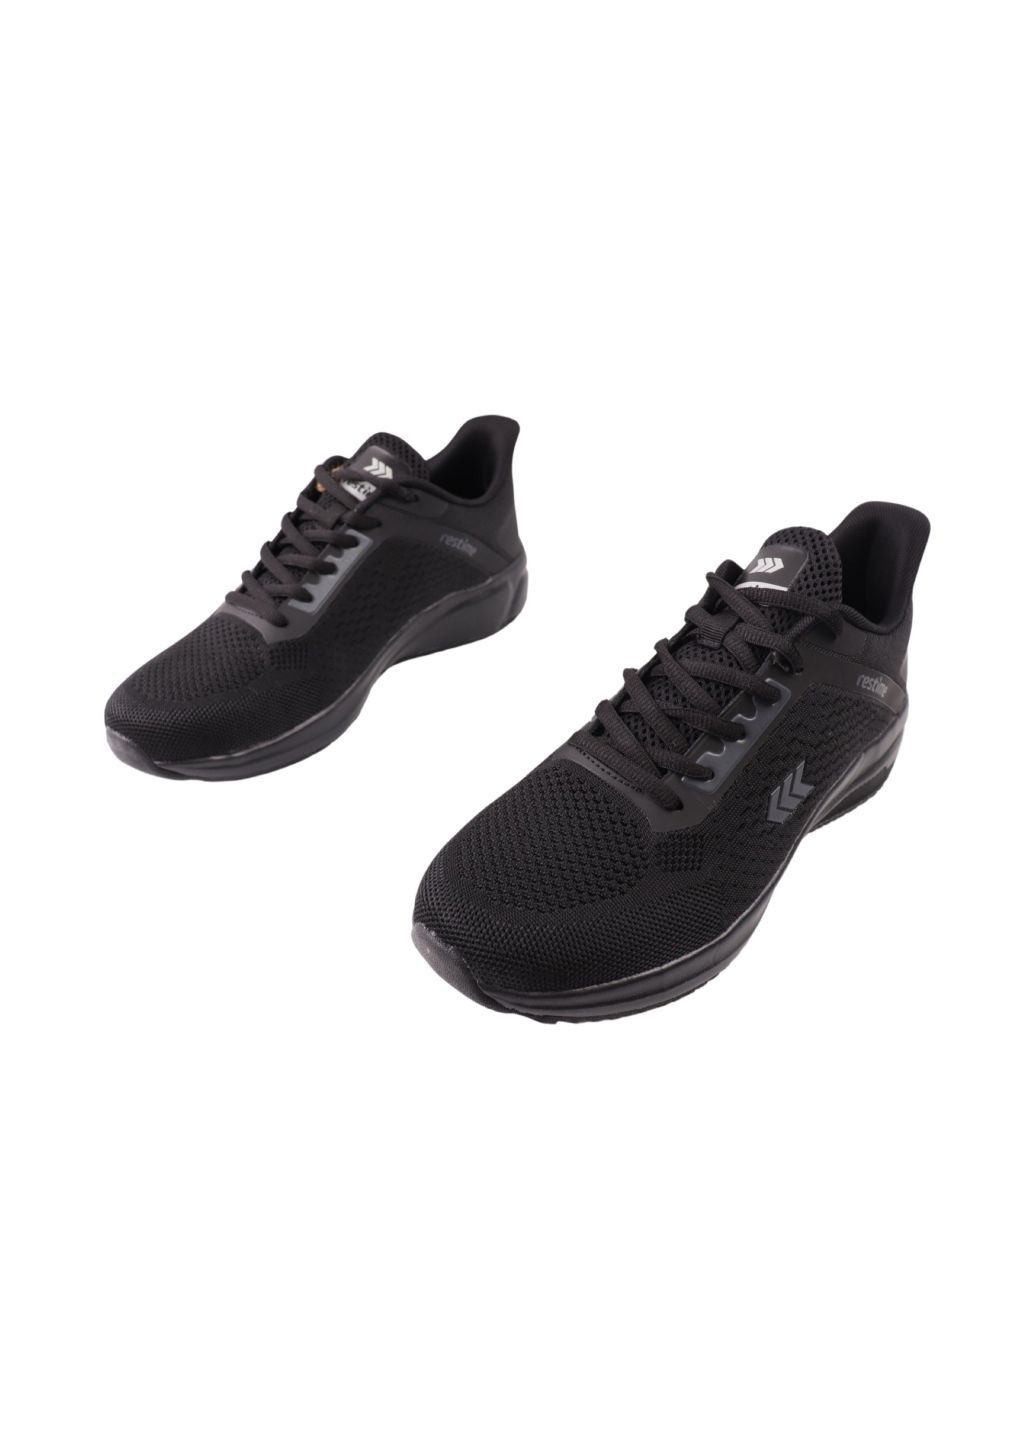 Черные кроссовки мужские черные текстиль Restime 276-24LK